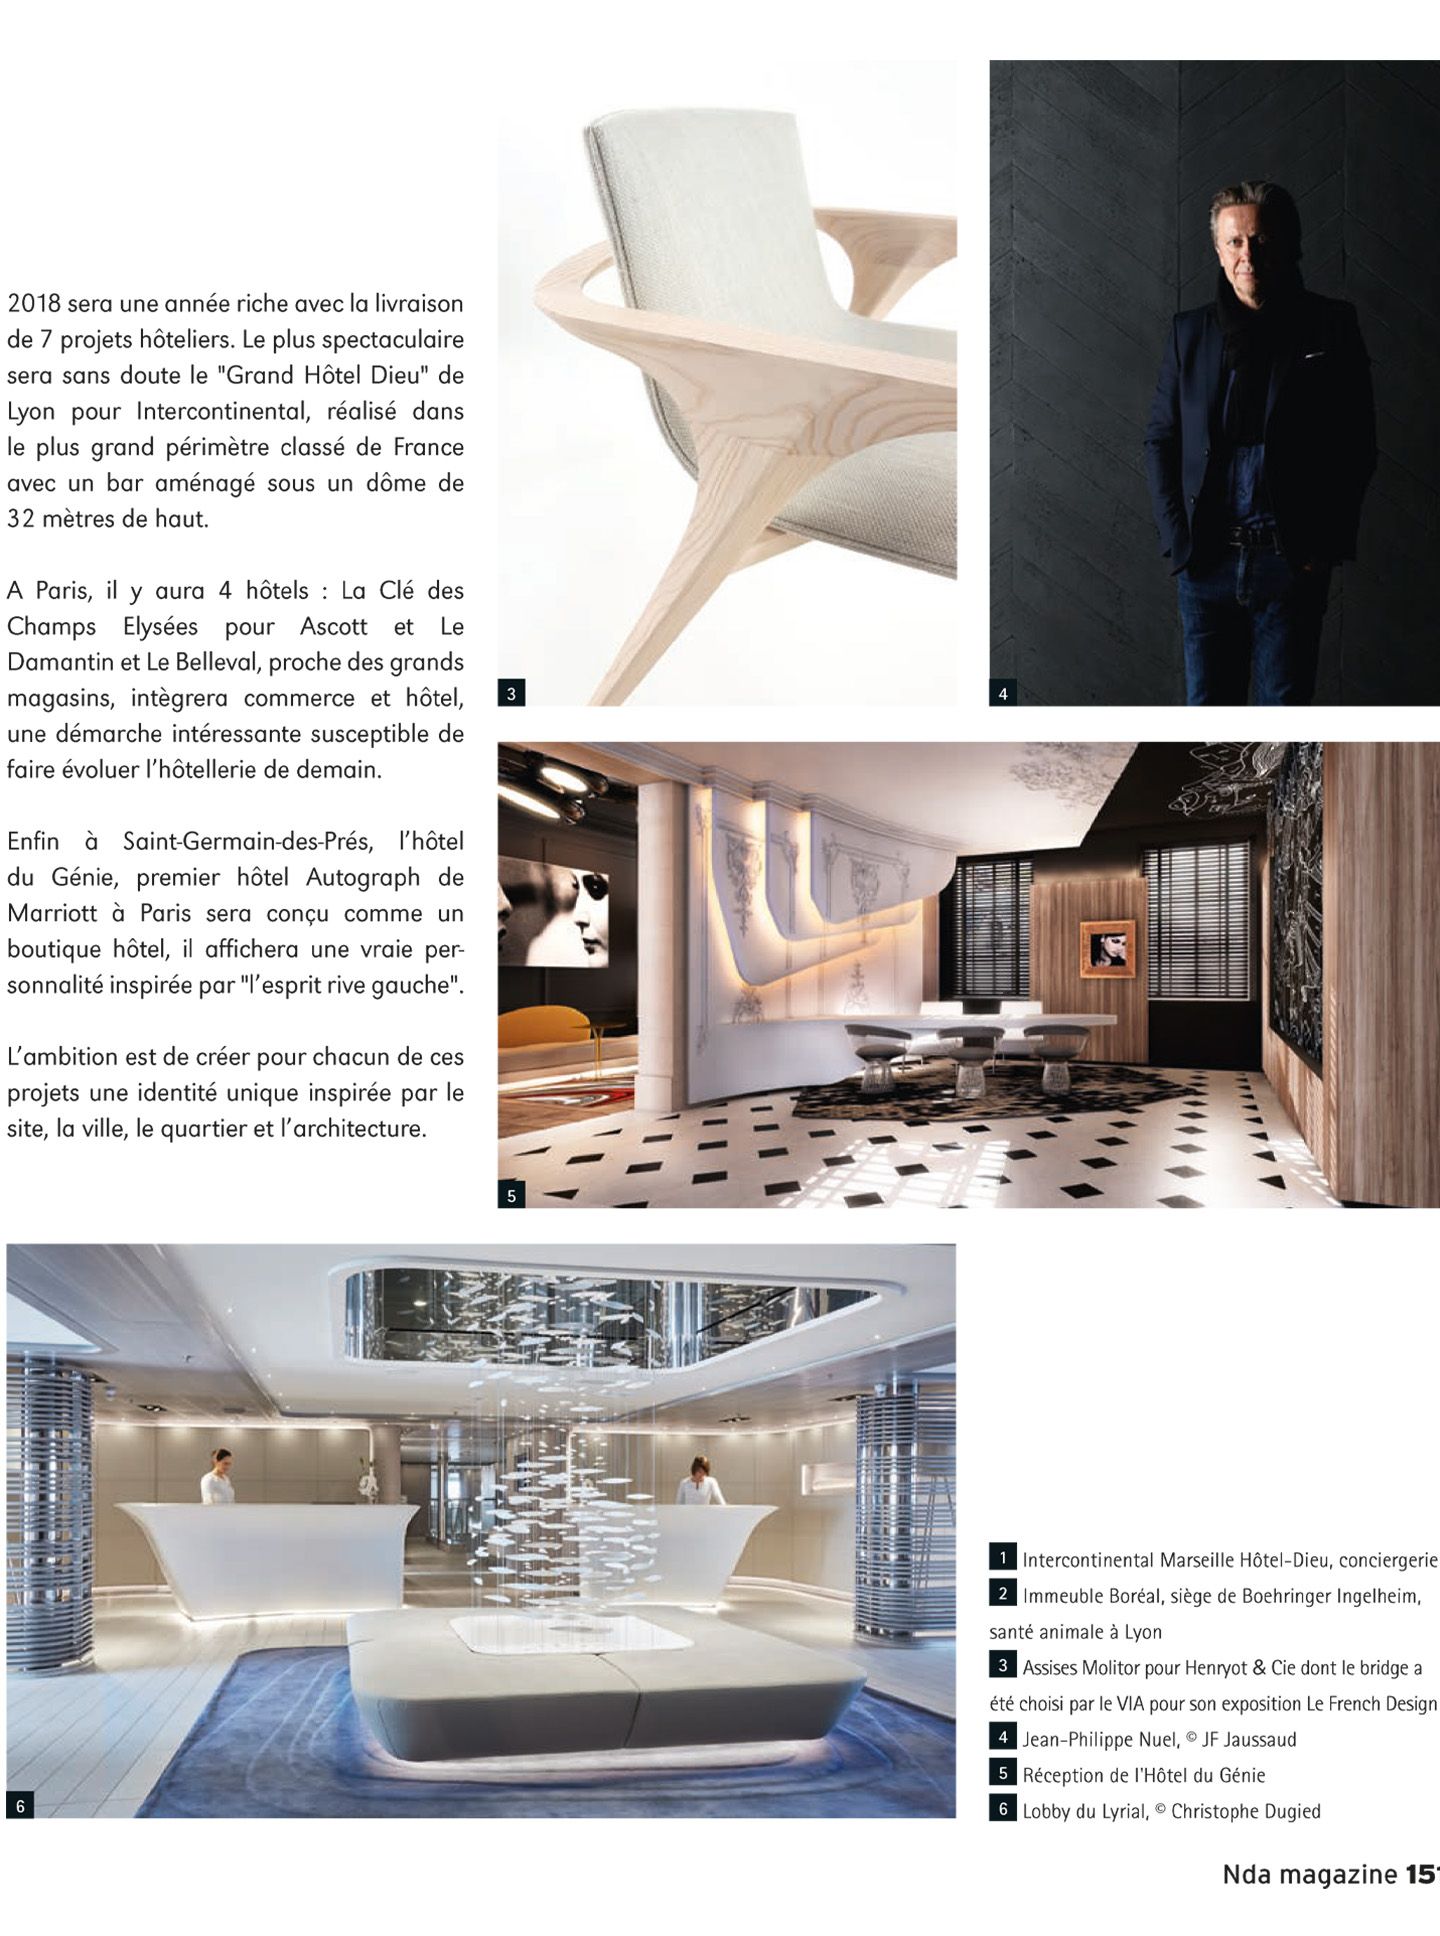 article sur le studio jean-philippe nuel dans le magazine nda et sur ses réalisations en architecture d'intérieur et design de luxe